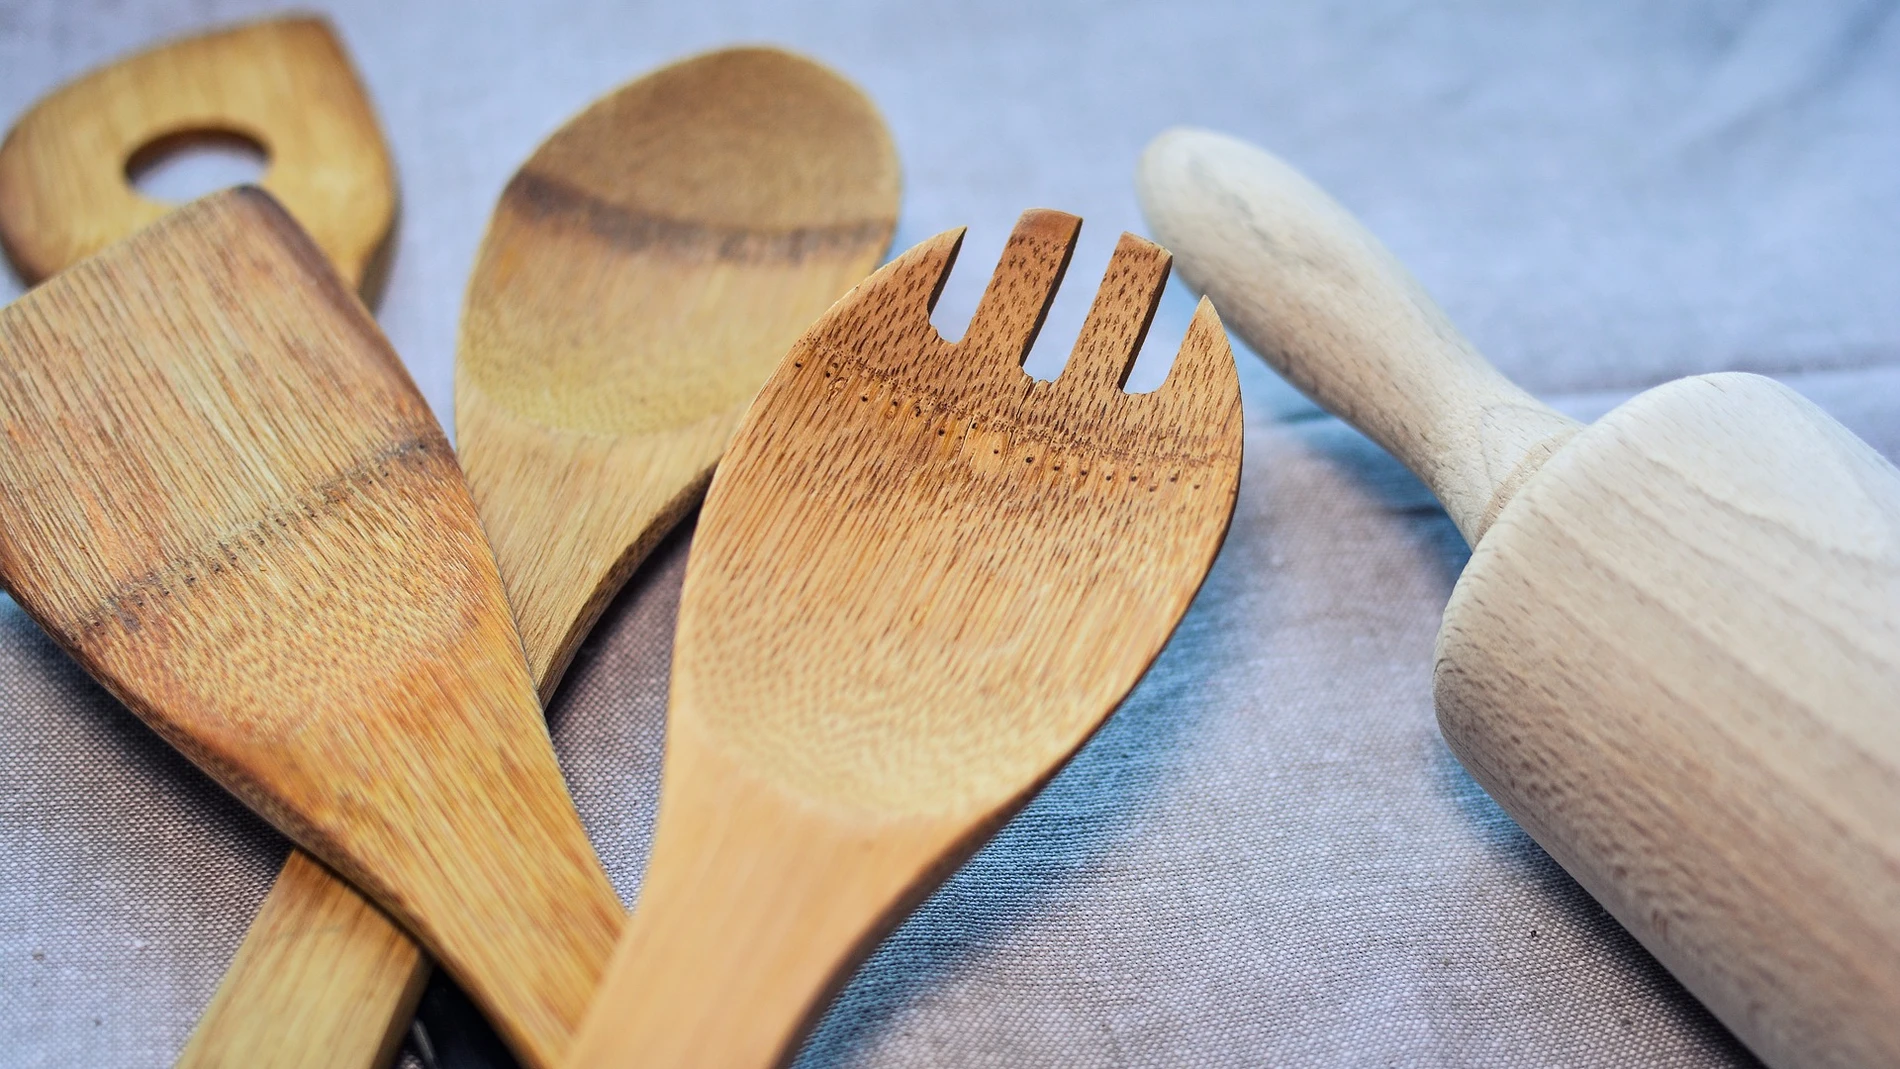 Varios expertos desaconsejan tener utensilios de madera en la cocina | Fuente: monicore / Pixabay